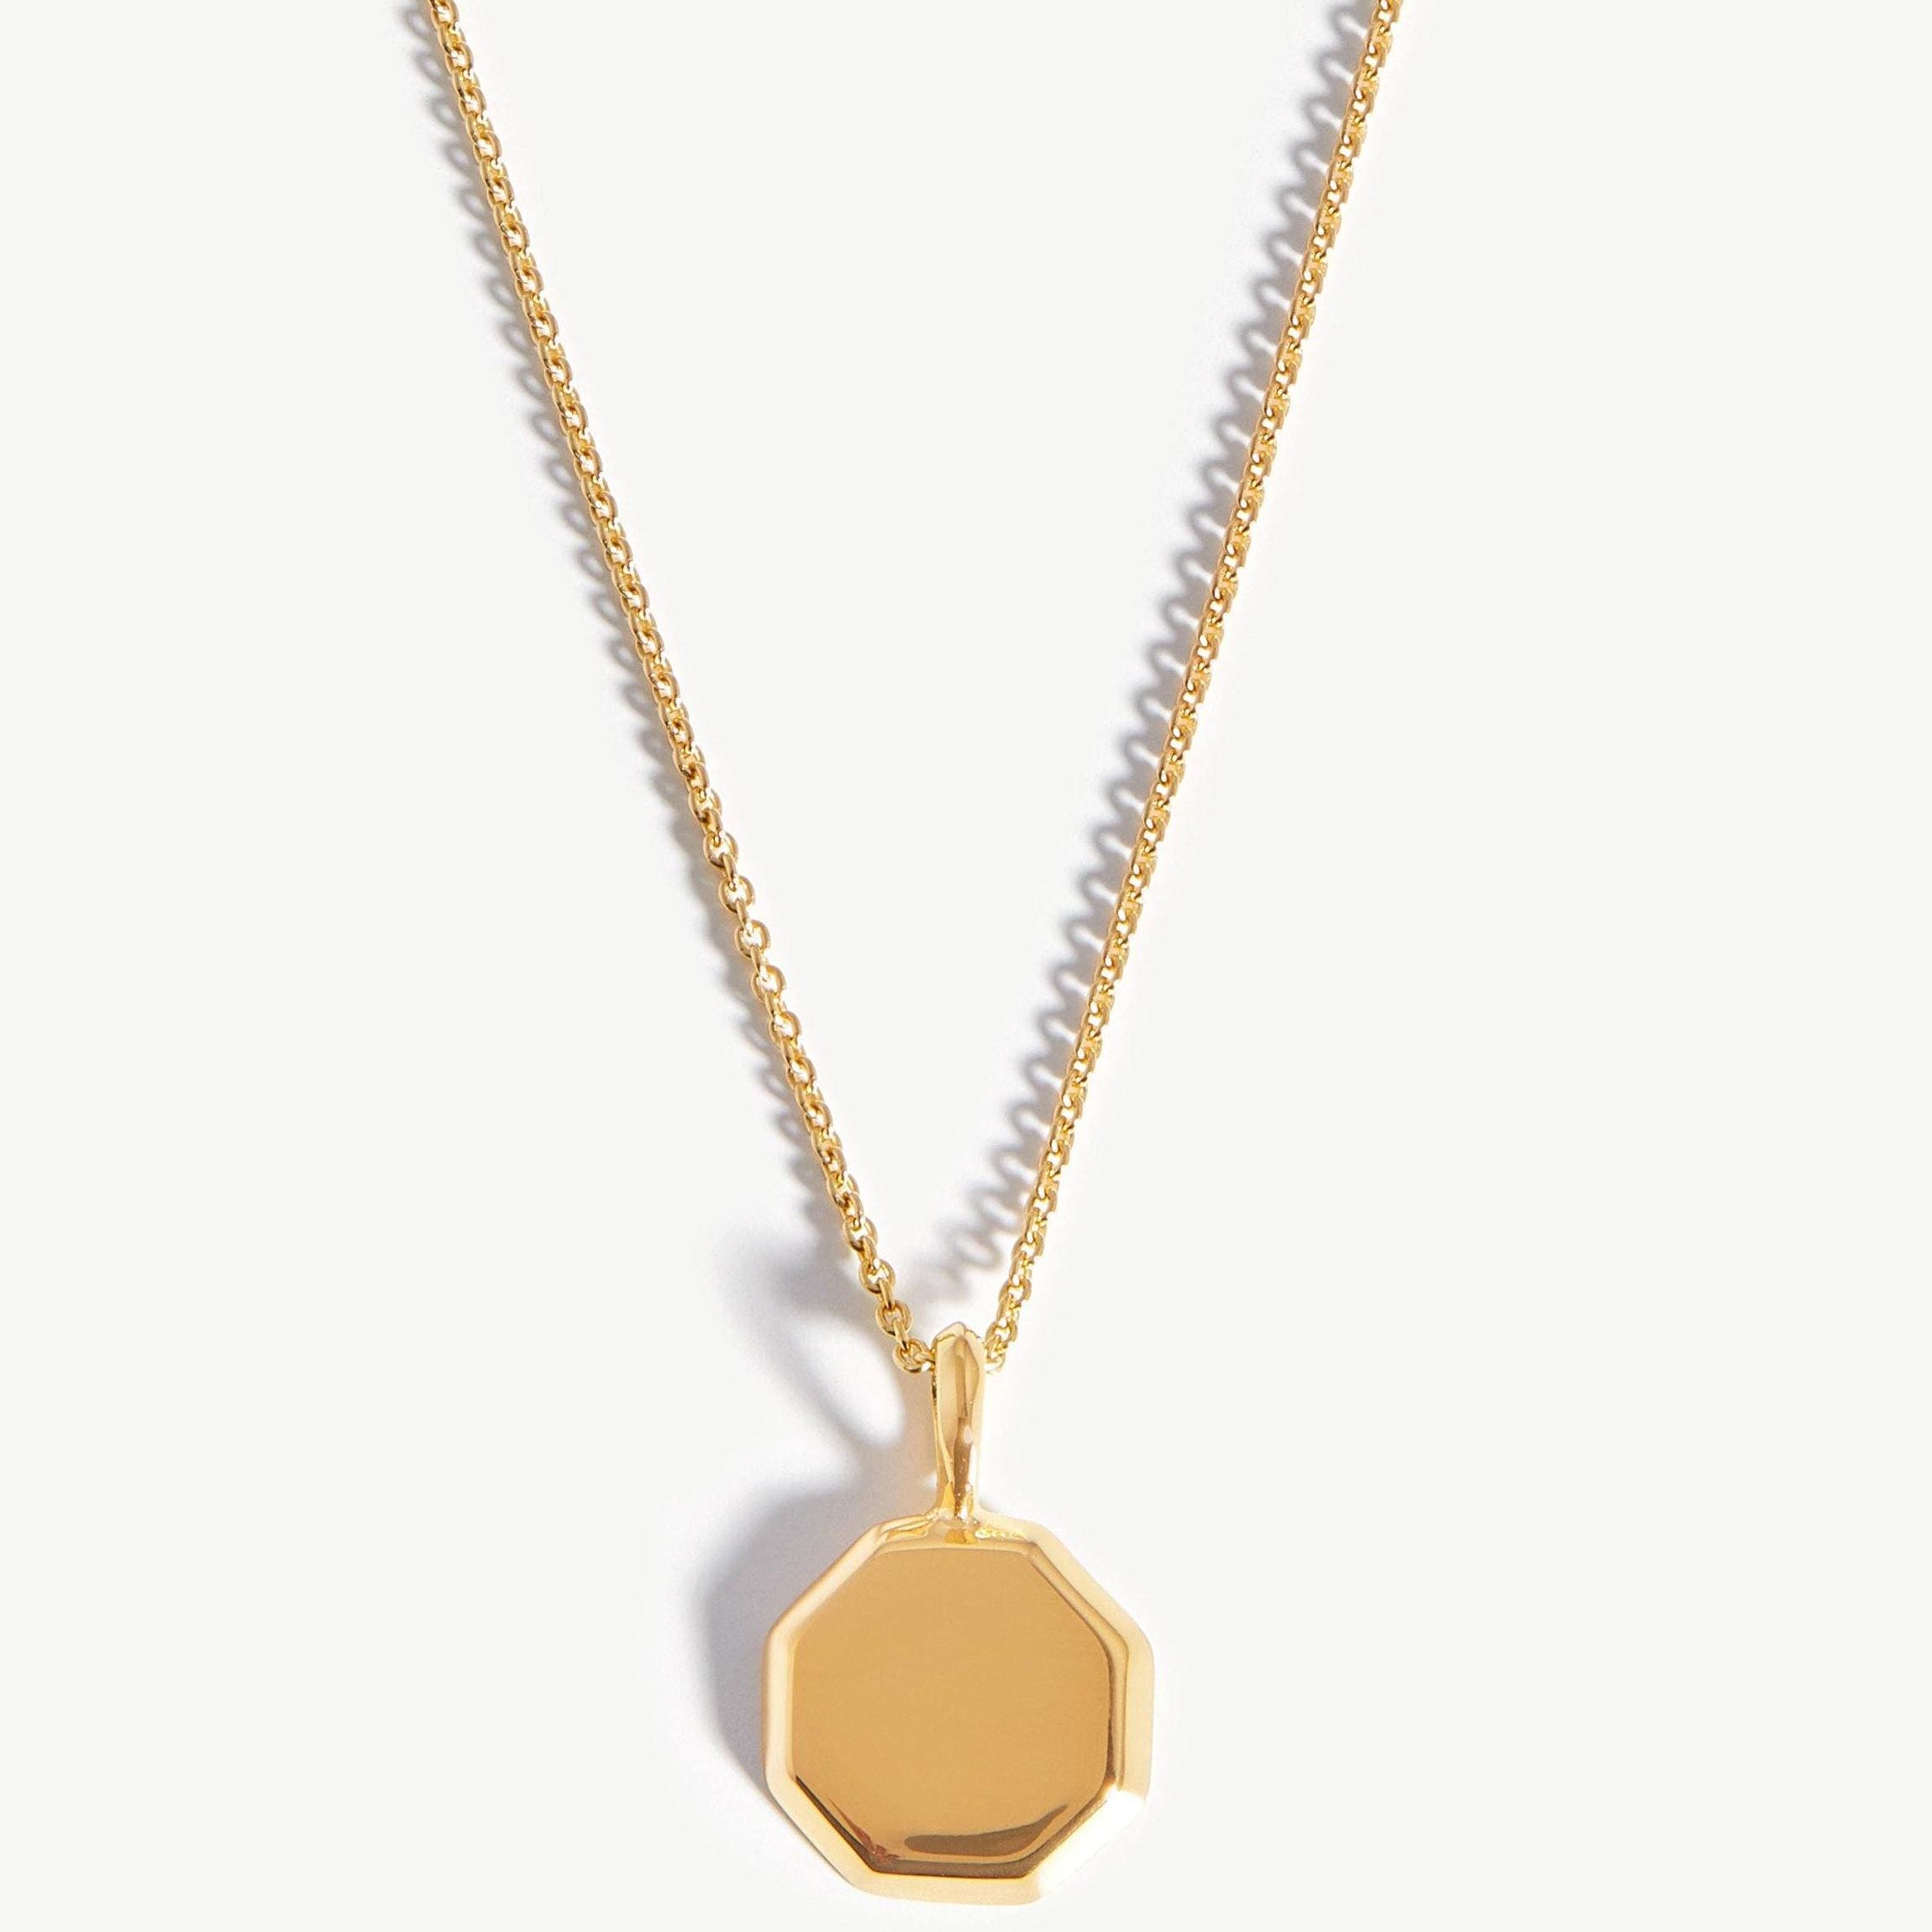 Joyería de plata personalizada de Puerto Rico, collar mini octágono corto grabable, vermeil de oro de 18 quilates